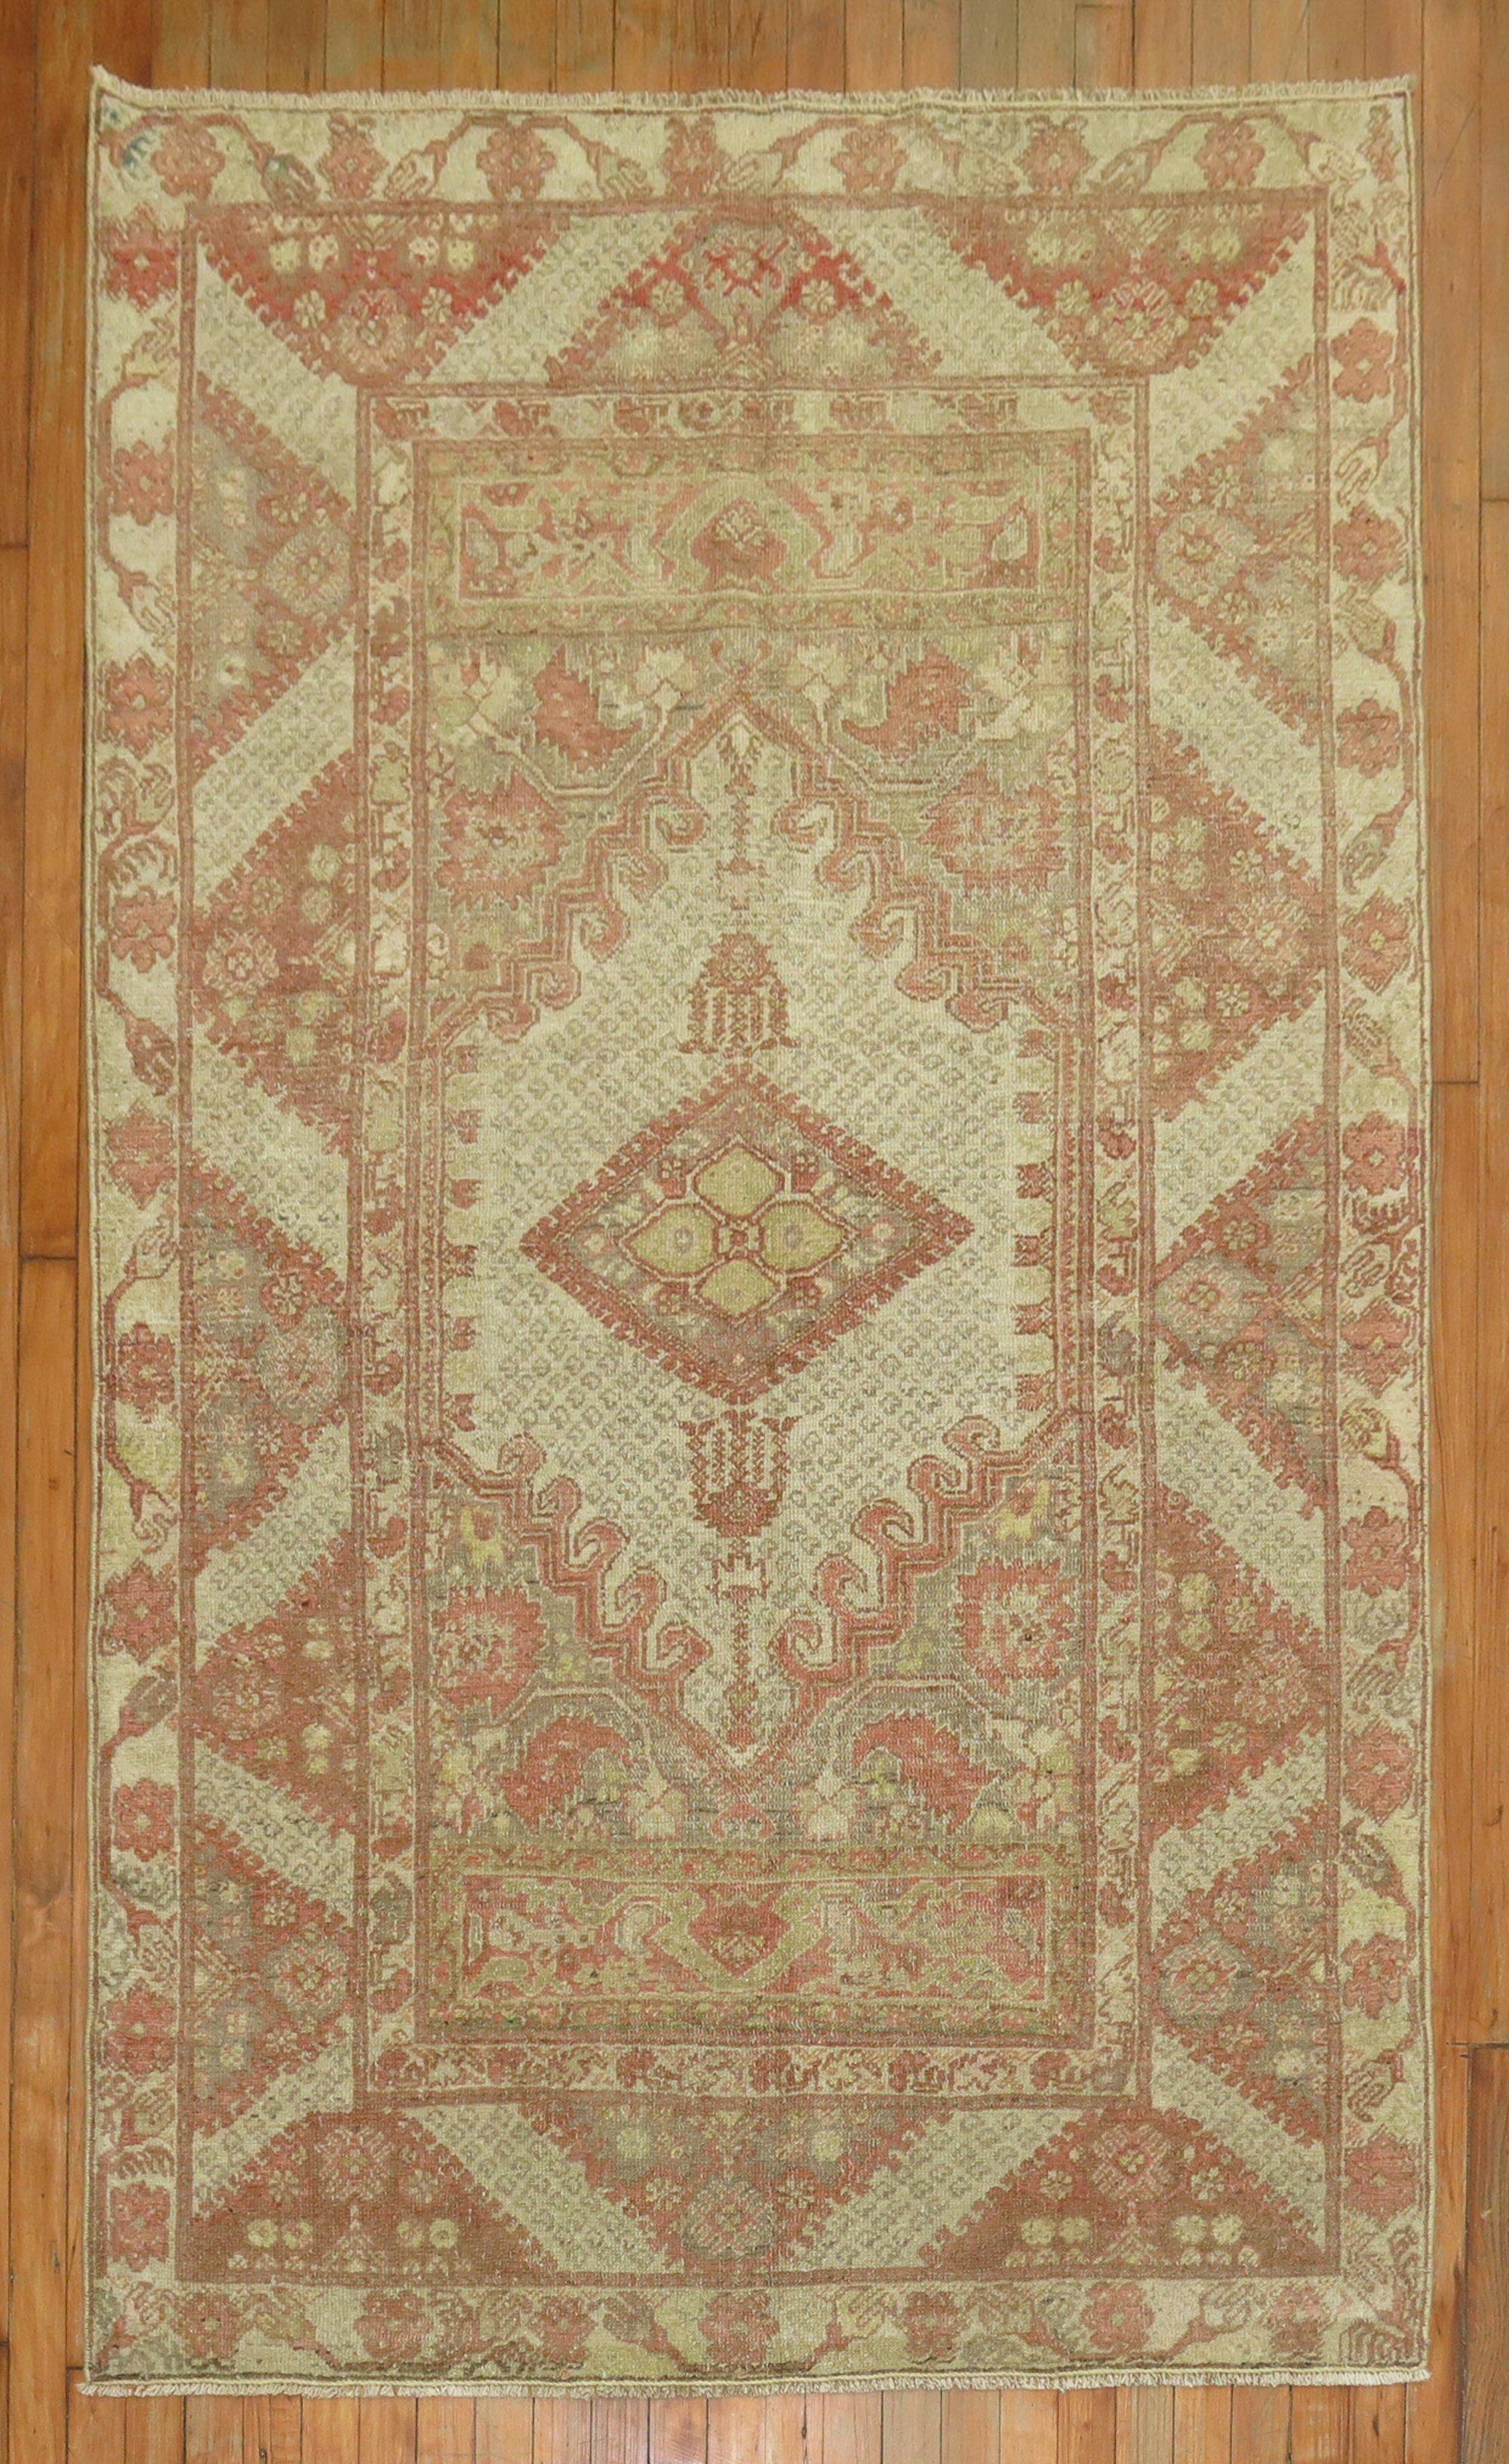 An antique Turkish Ghiordes rug.